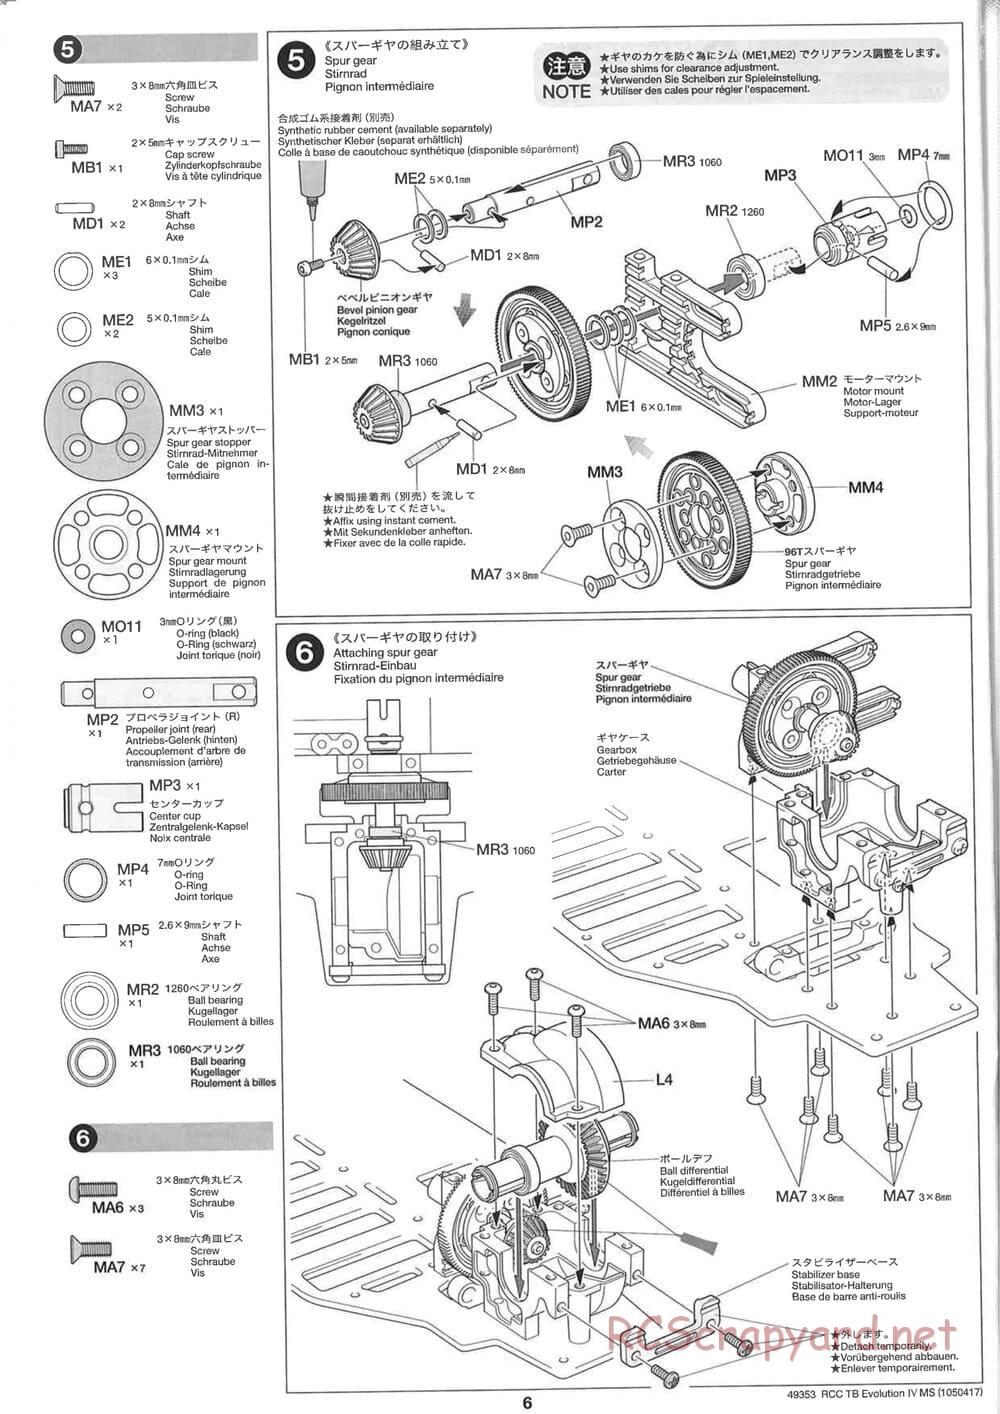 Tamiya - TB Evolution IV MS Chassis - Manual - Page 6